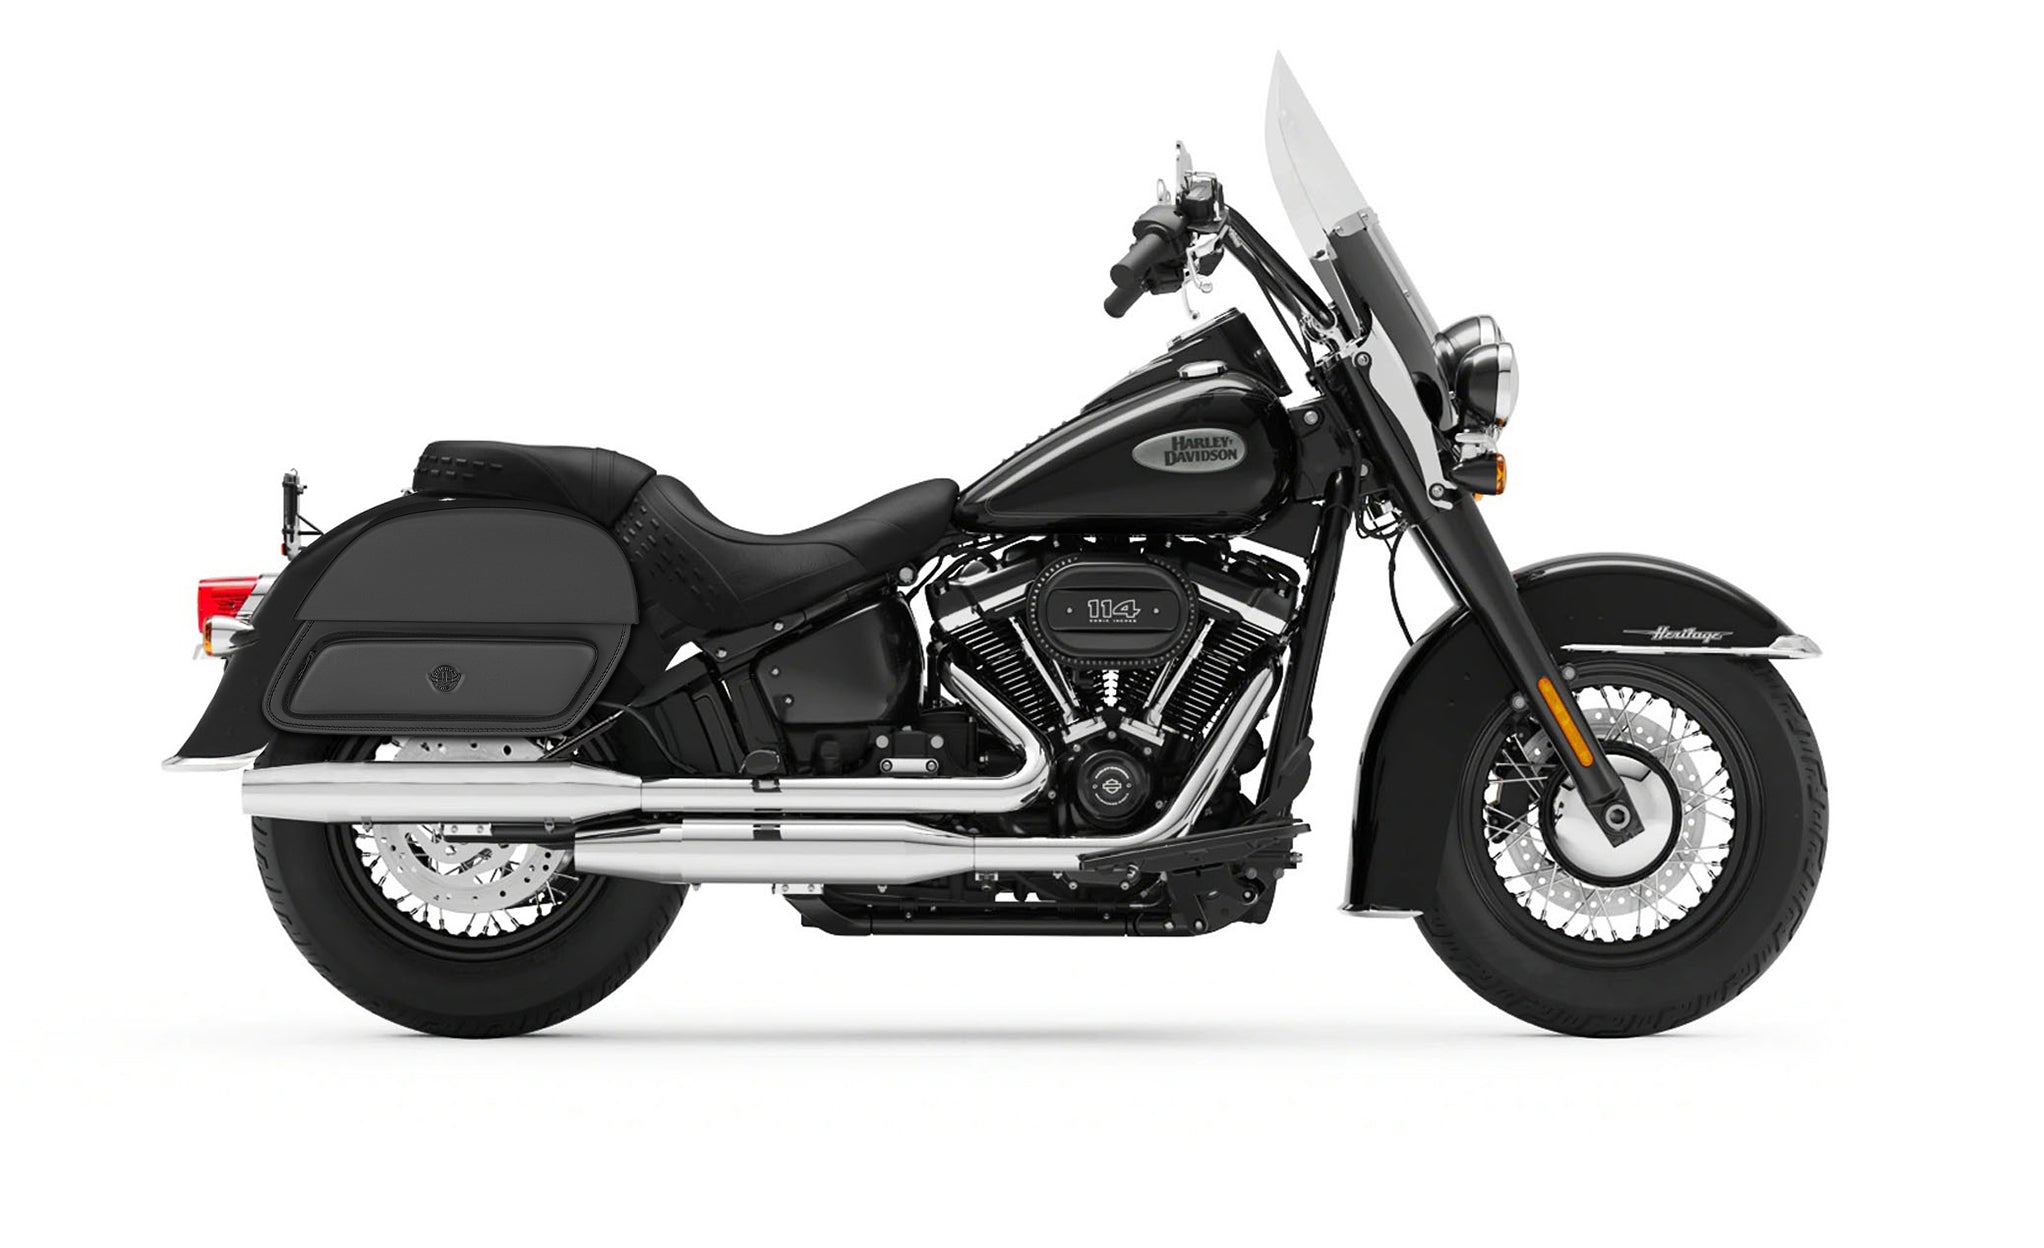 Viking Pantheon Medium Leather Motorcycle Saddlebags For Harley Davidson Softail Heritage Flst I C Ci on Bike Photo @expand